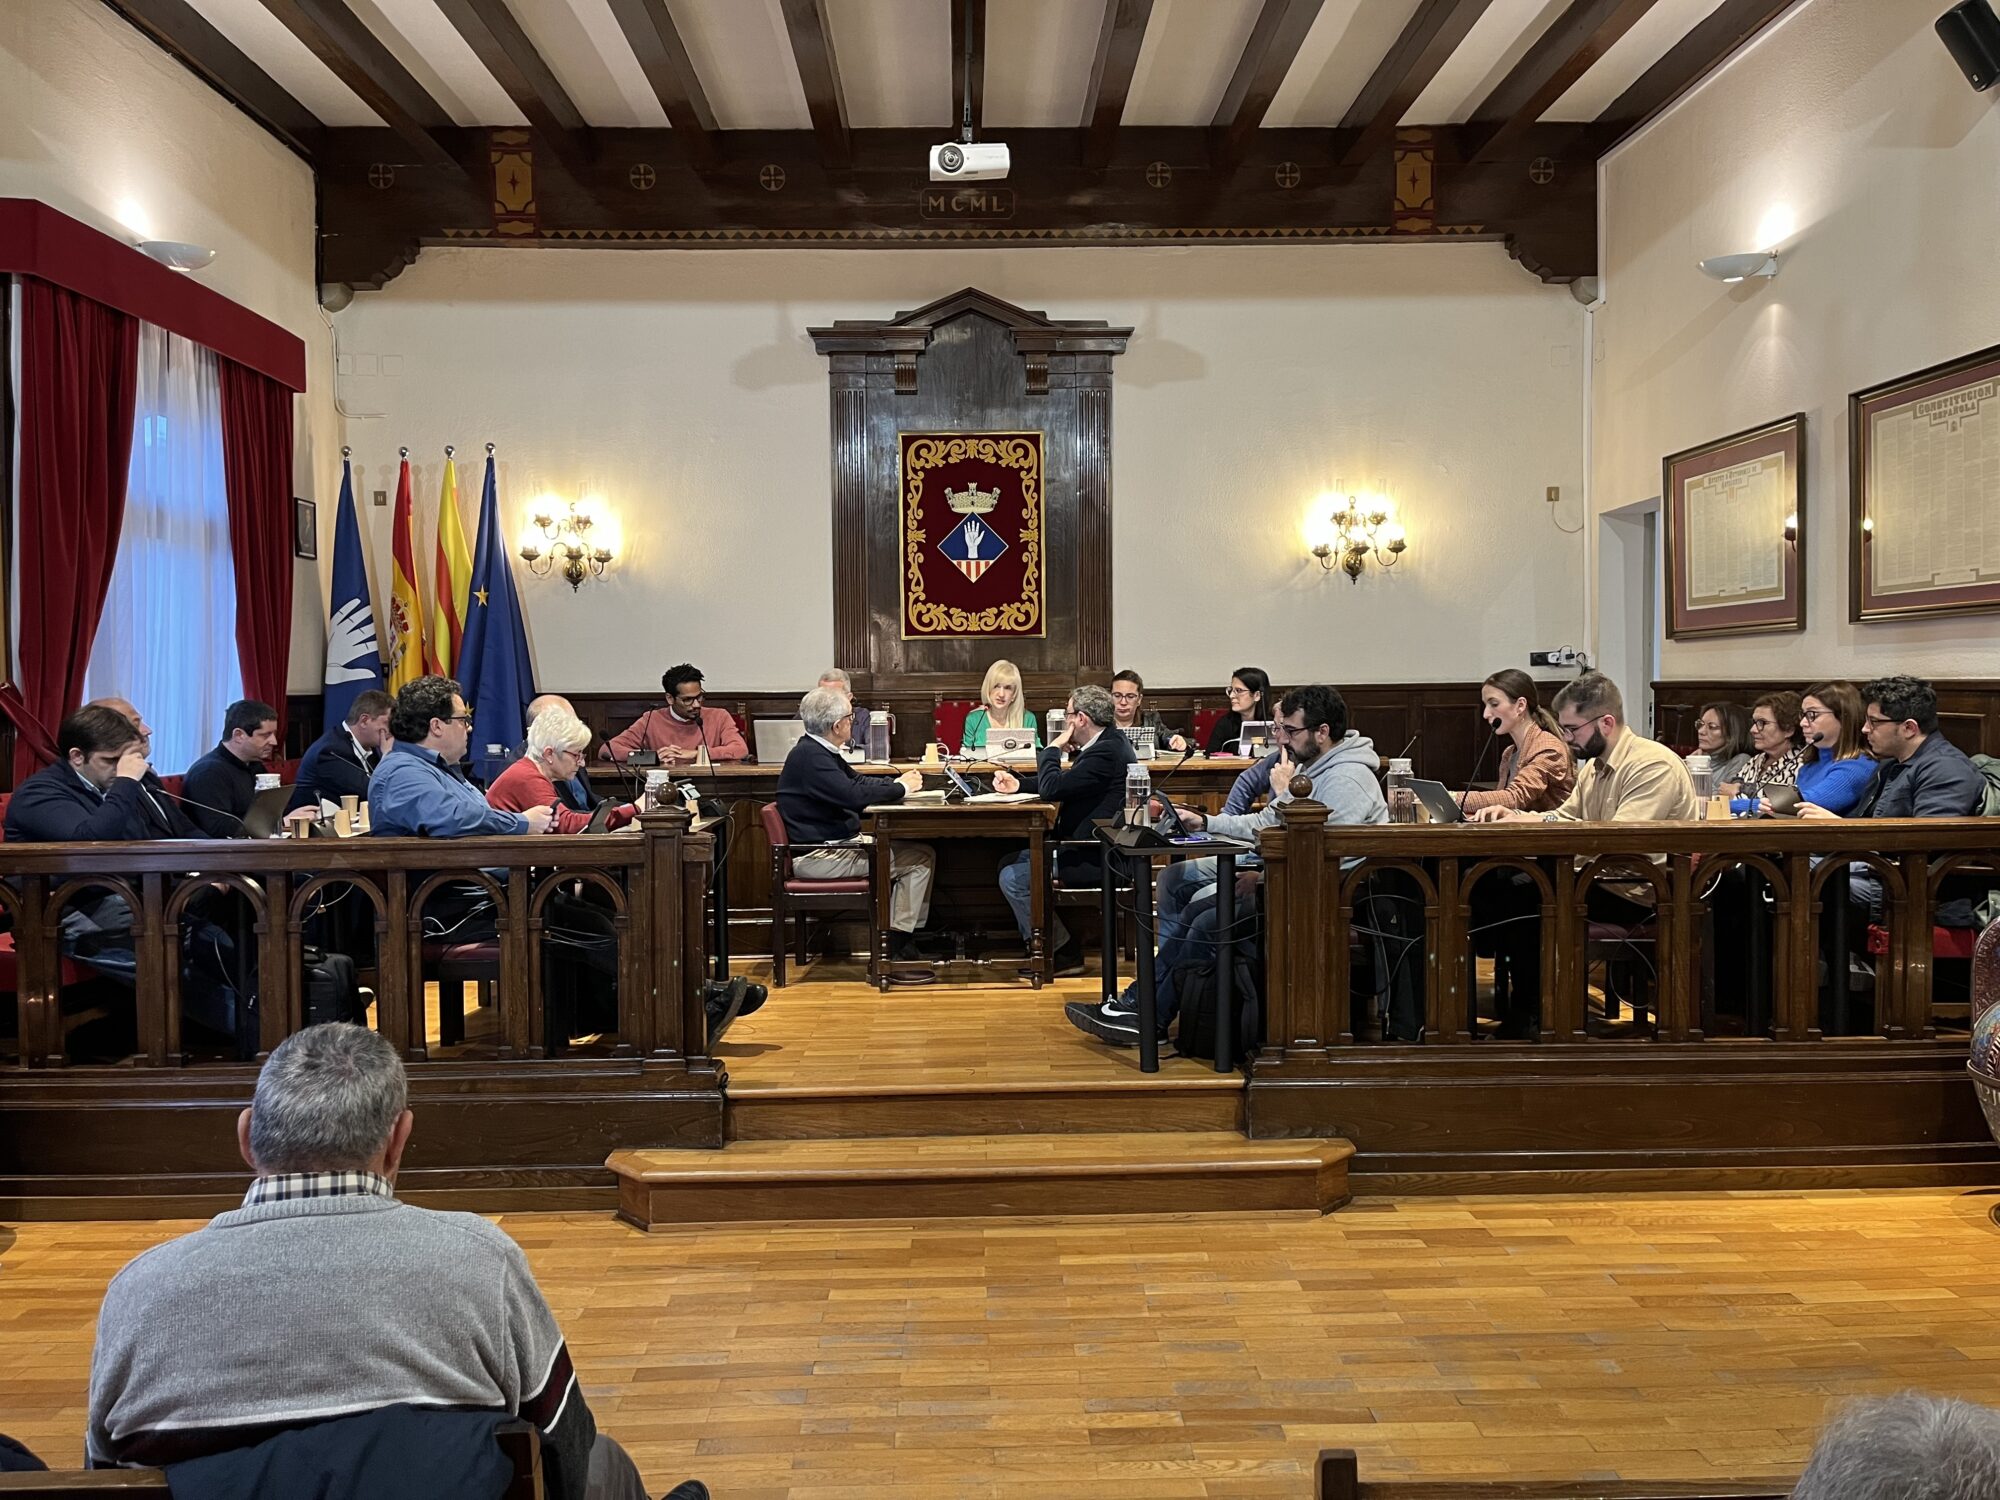 Pla general de totes les regidores i regidors al Saló de Plens de l'Ajuntament d'Esplugues